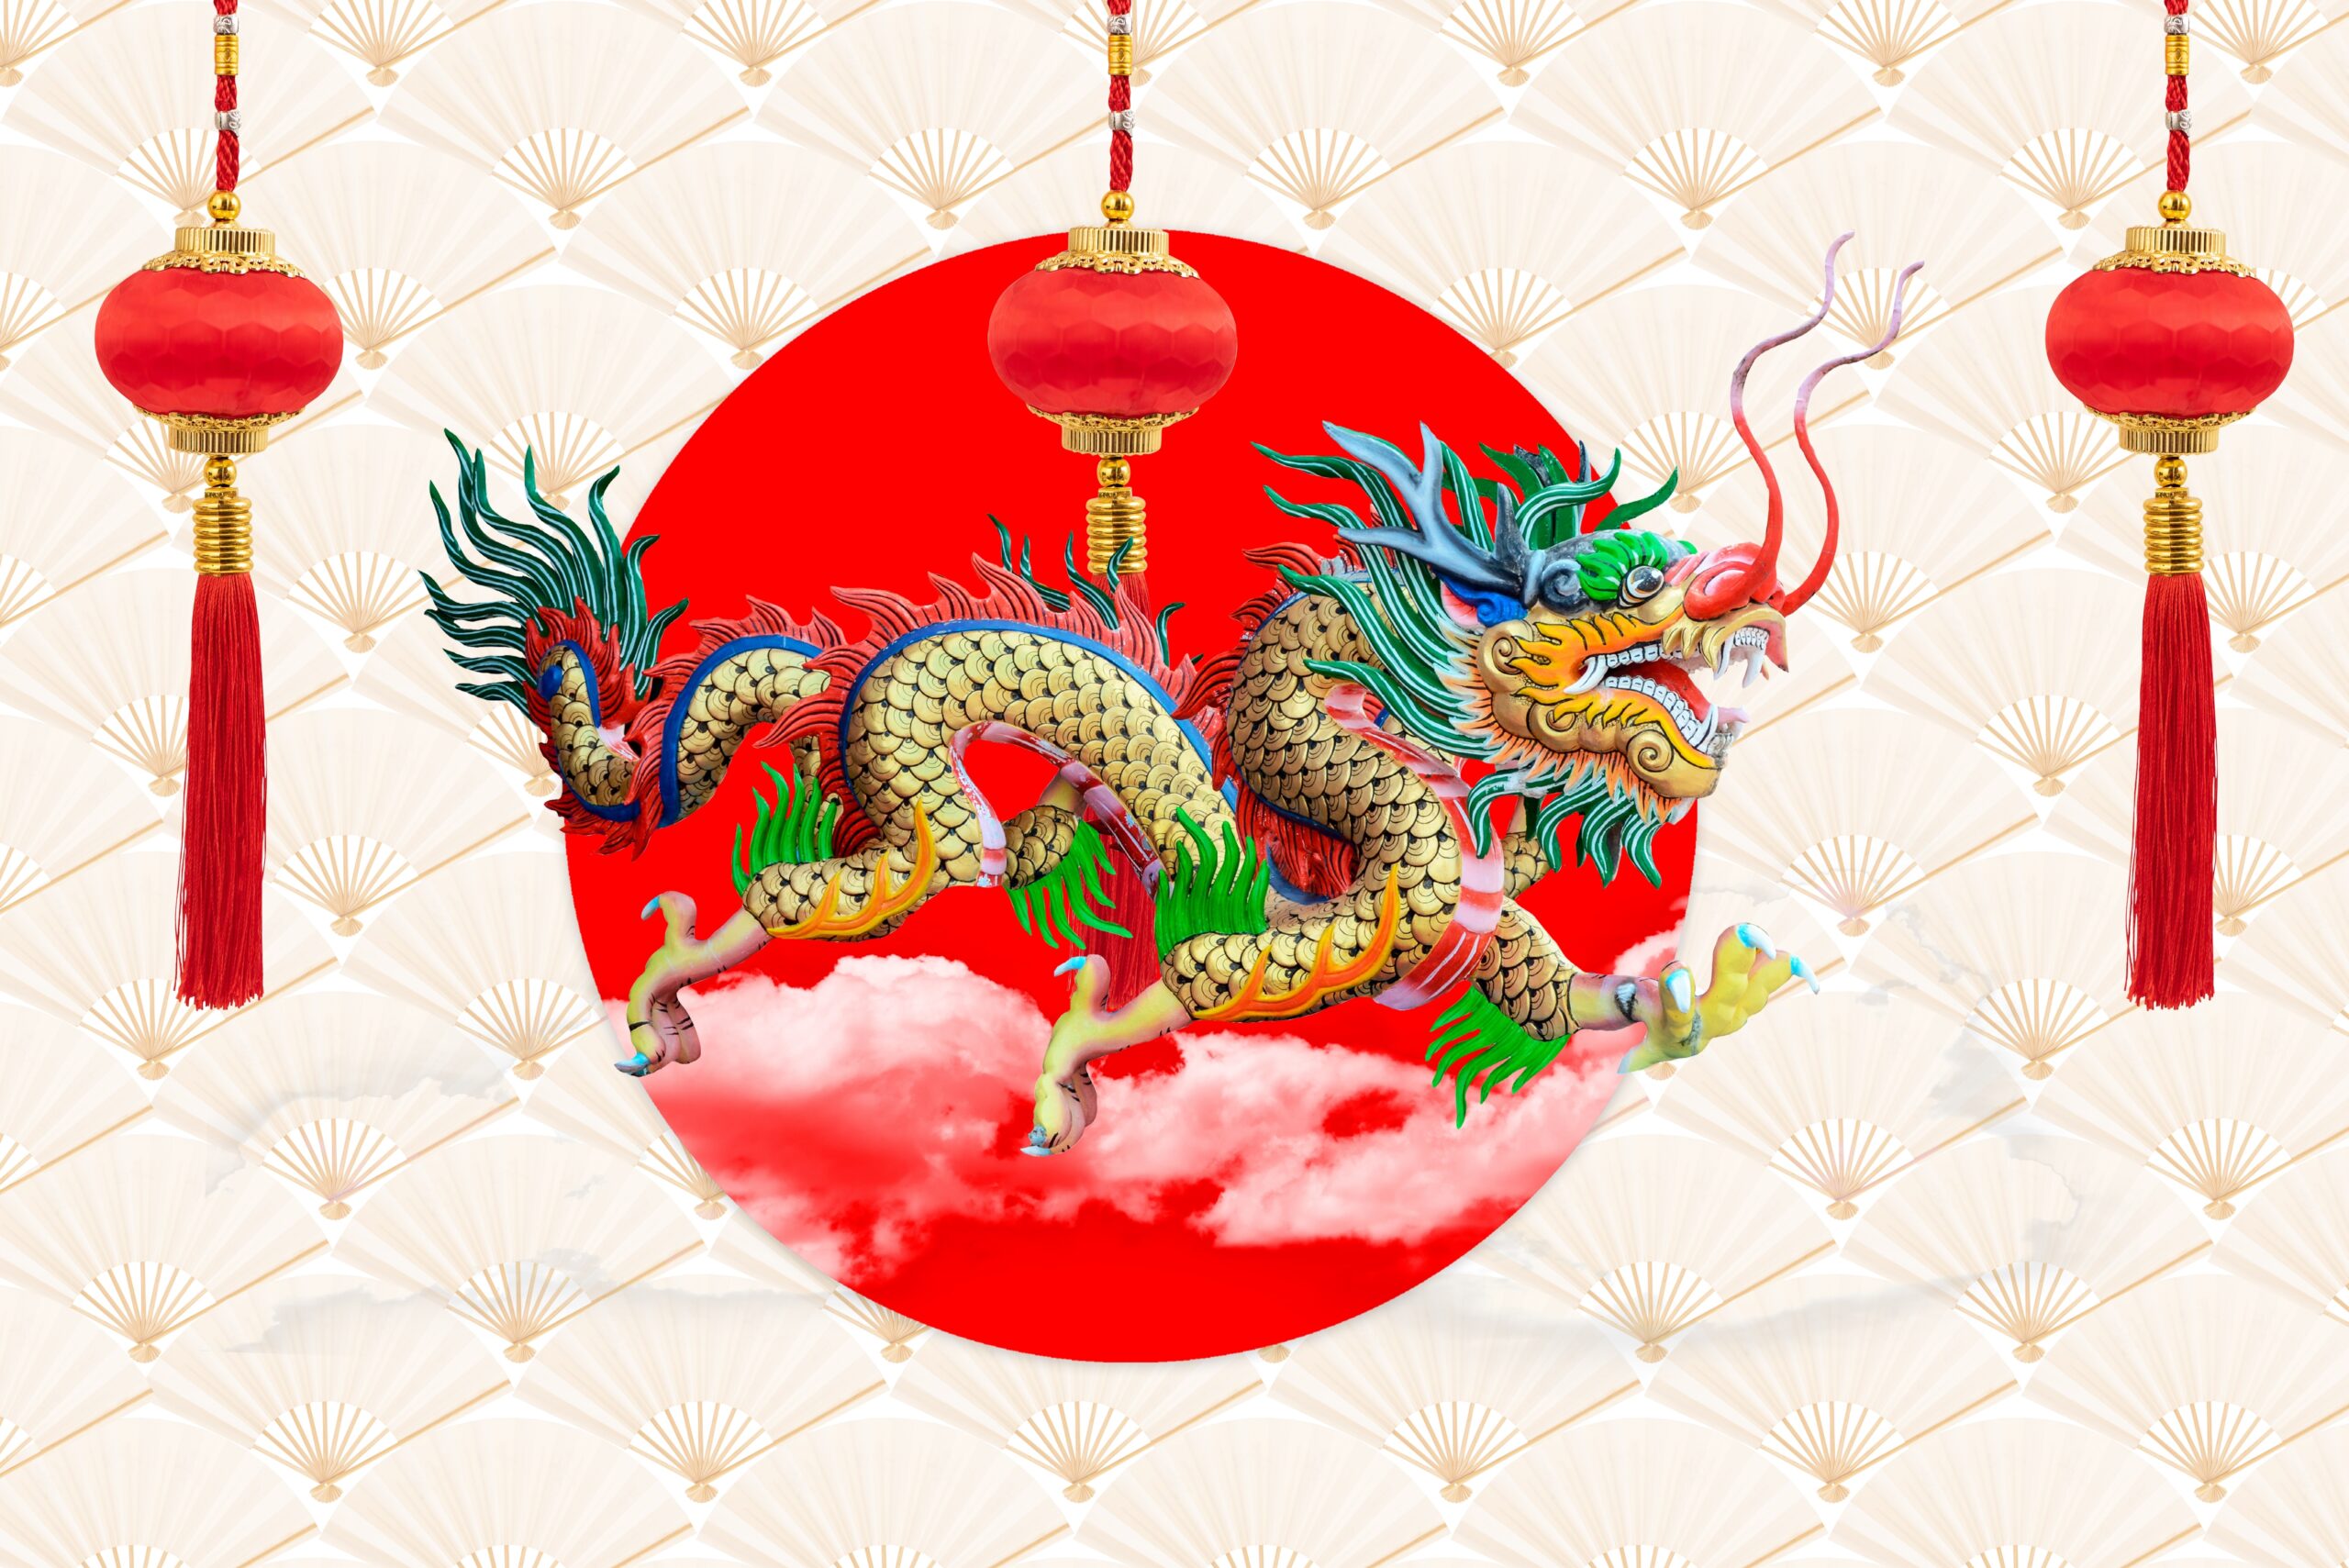 Lunar New Year - Dragon